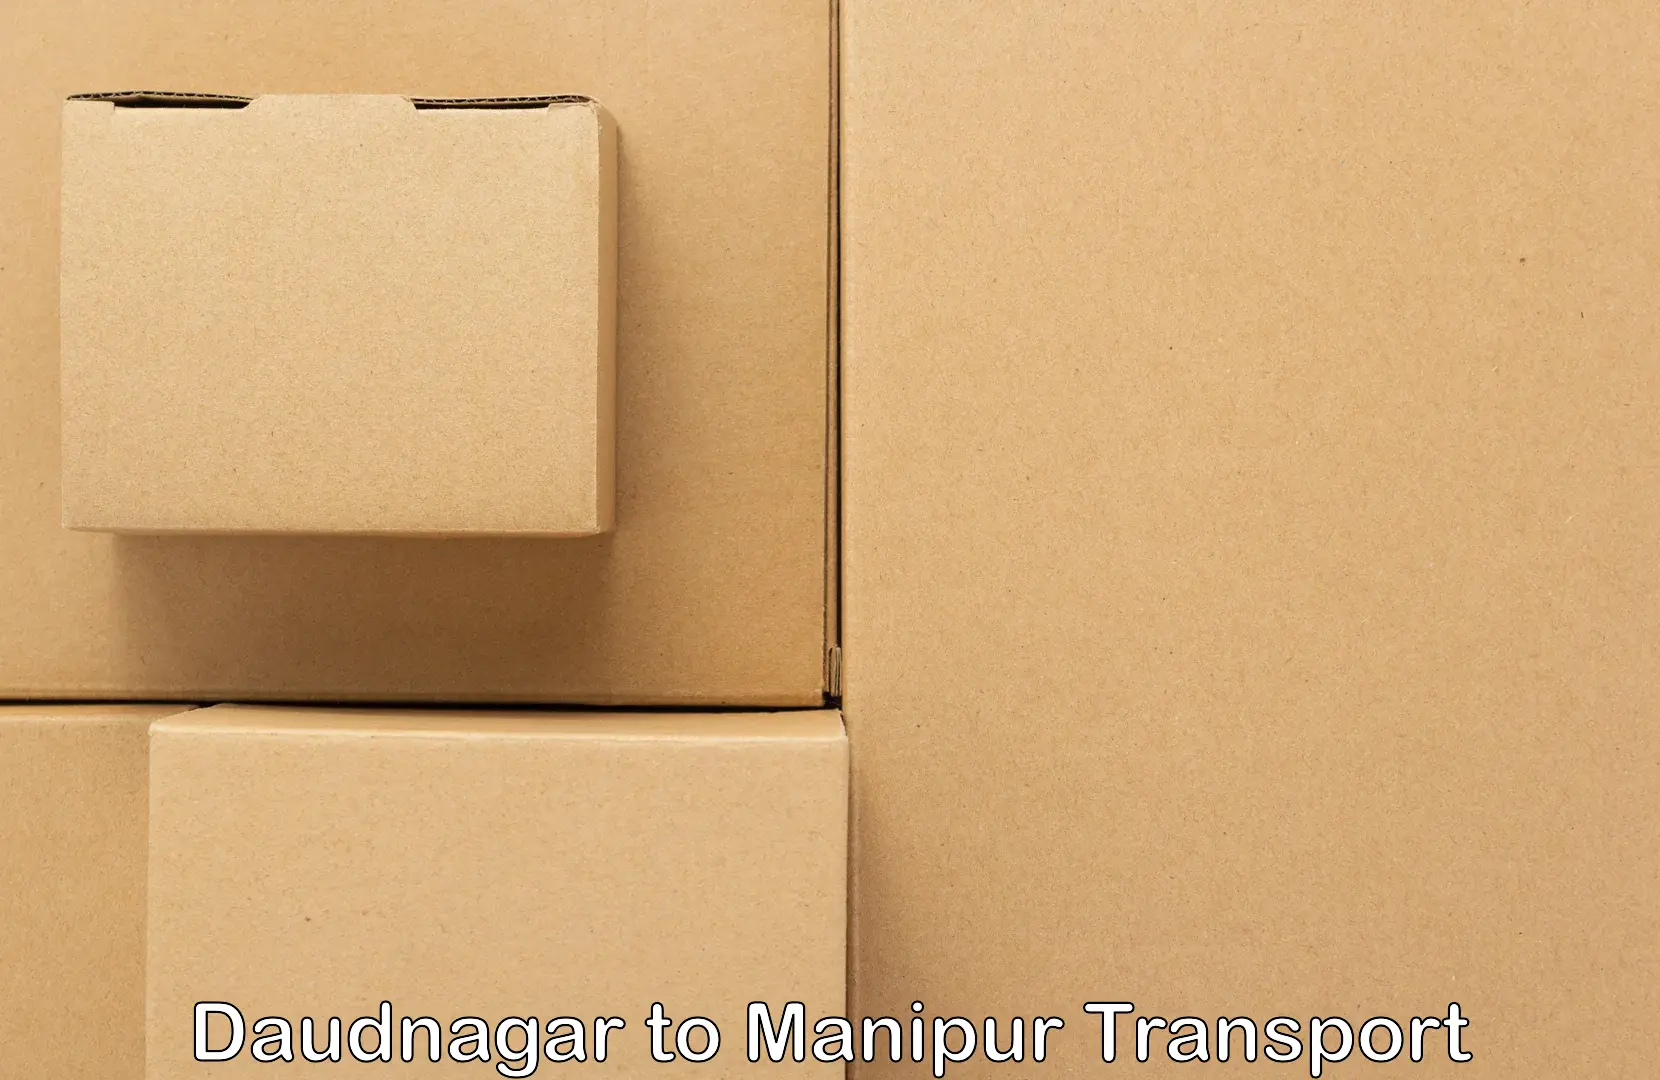 Air freight transport services Daudnagar to Kaptipada